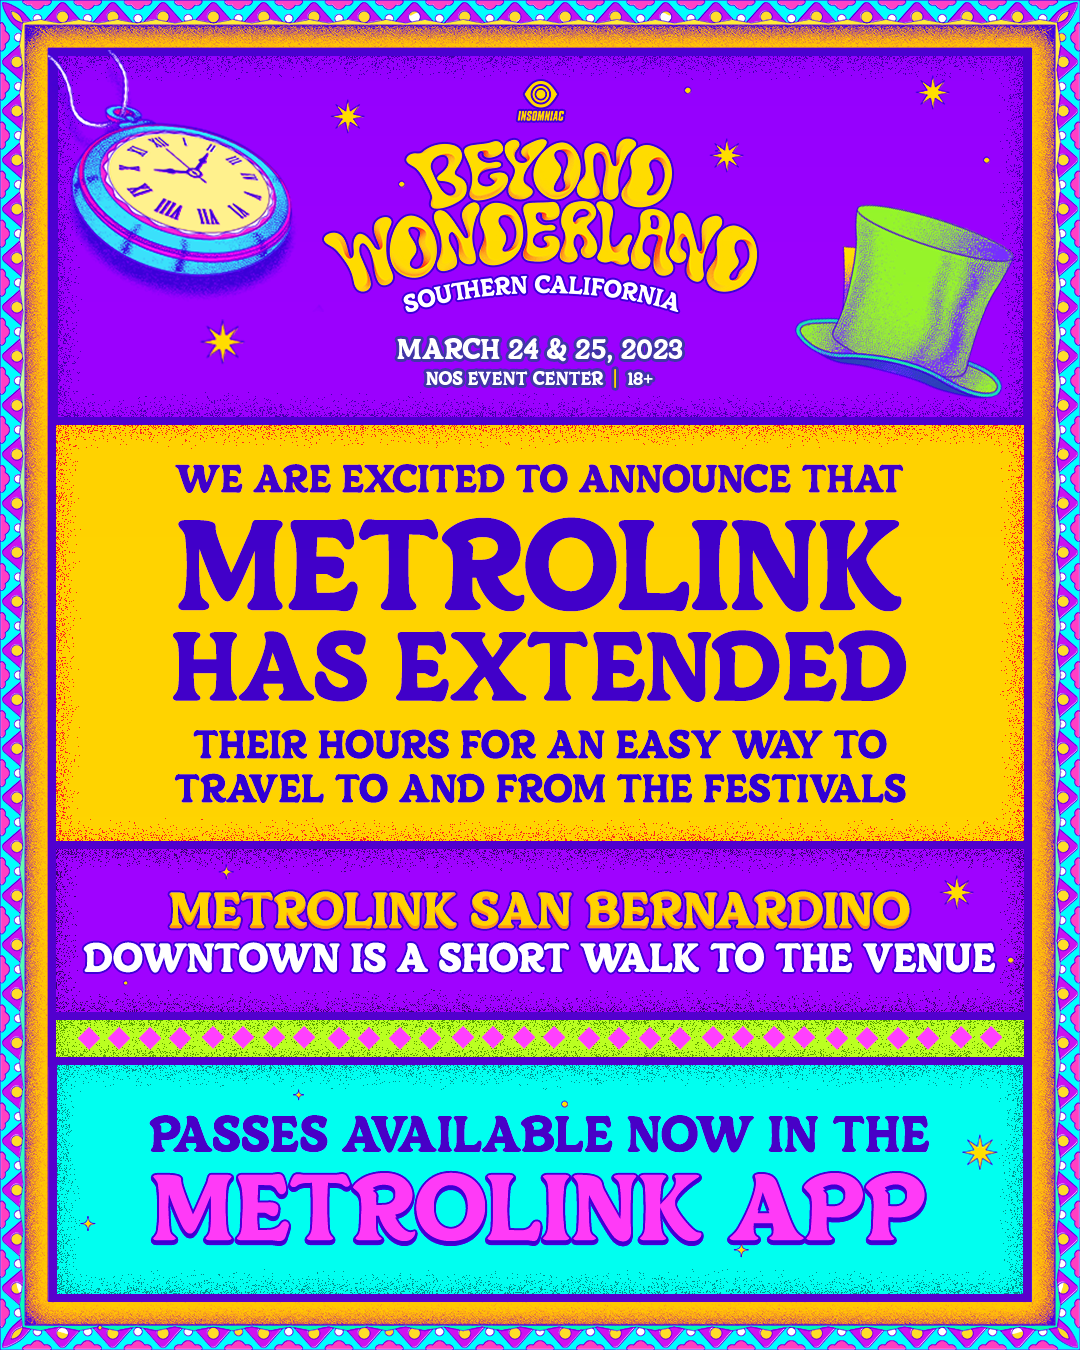 Take the Metrolink train to Beyond Wonderland